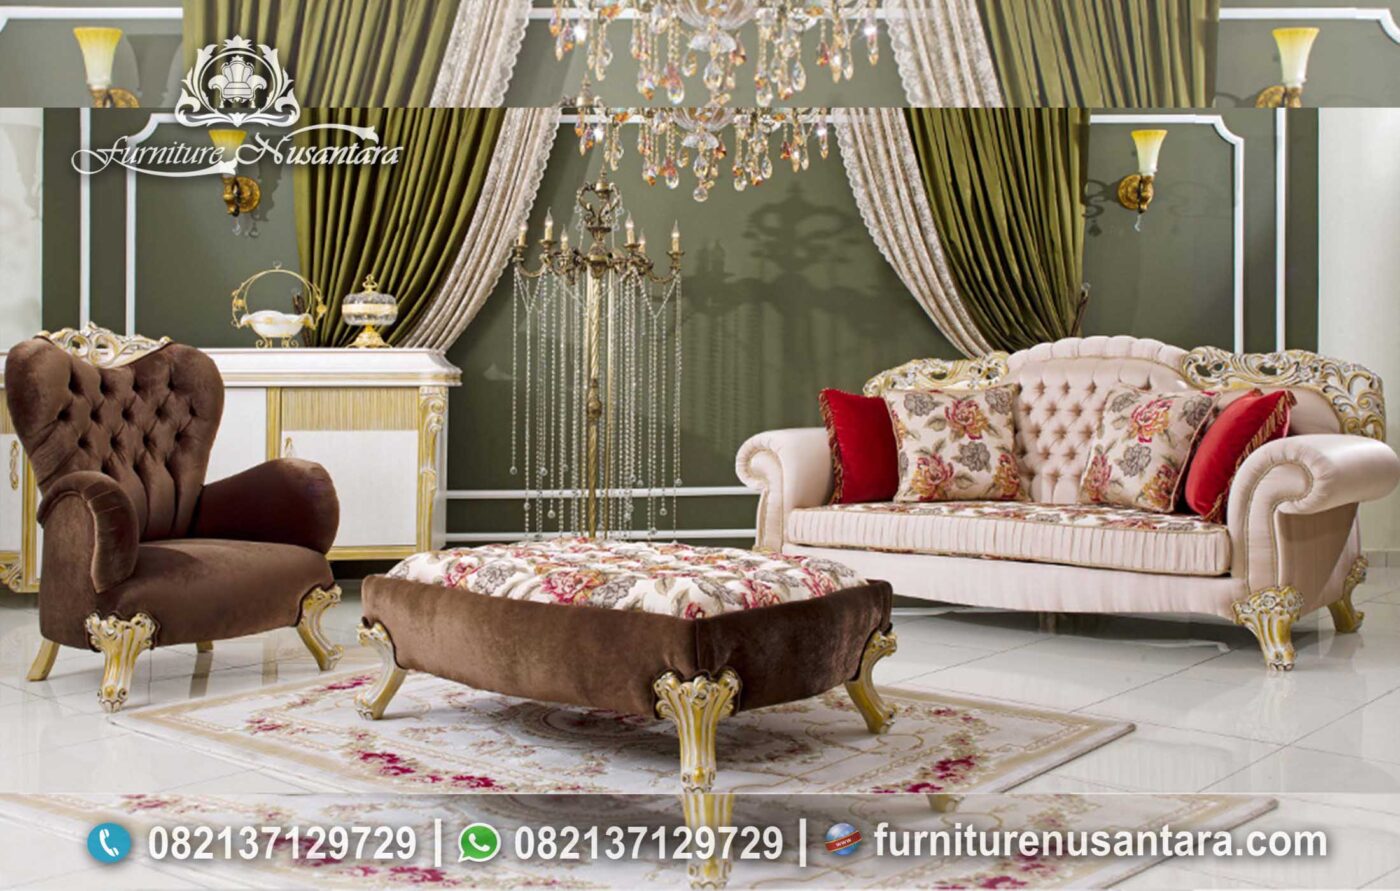 Jual Sofa Luxury Modern Termurah ST-55, Furniture Nusantara